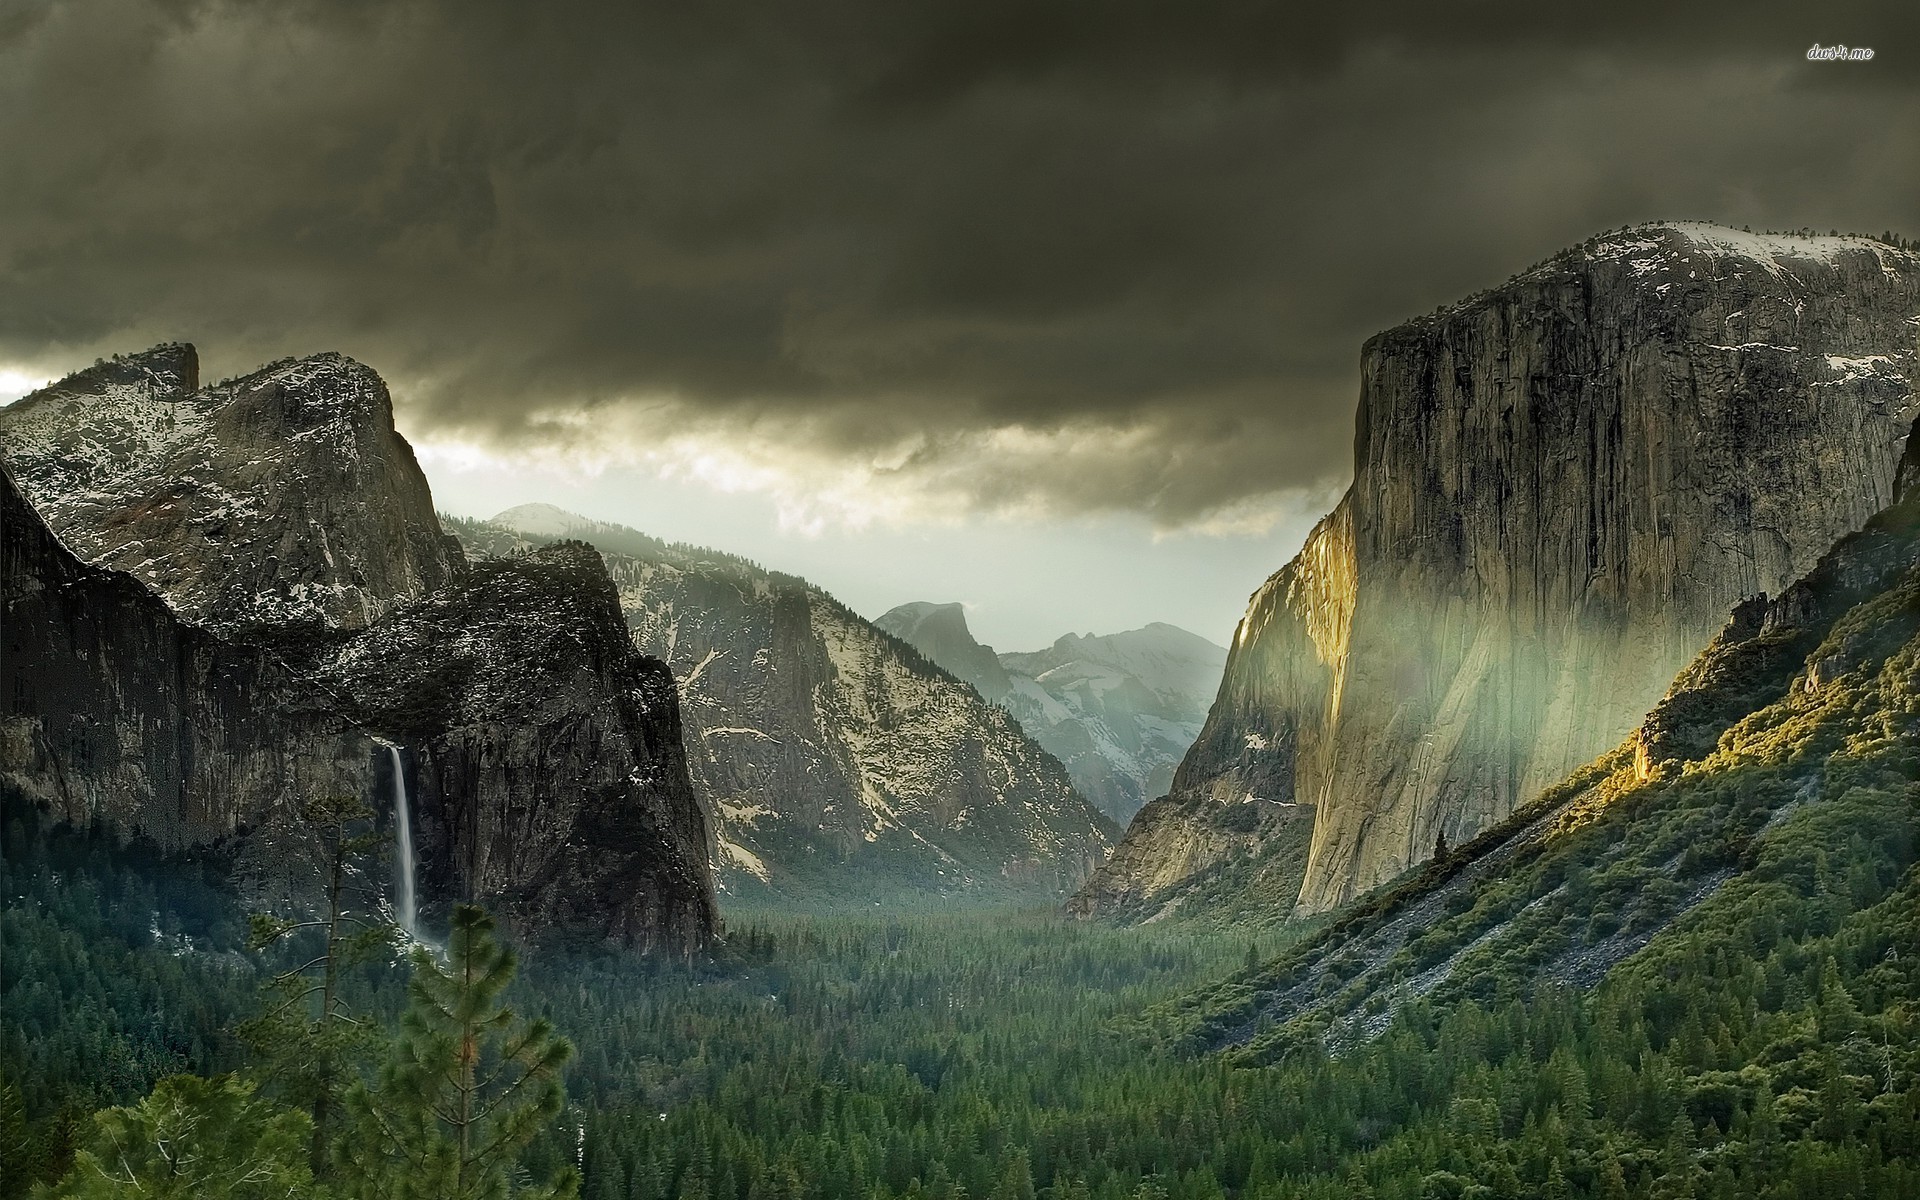 Download Mac Os X Yosemite 10.10 5